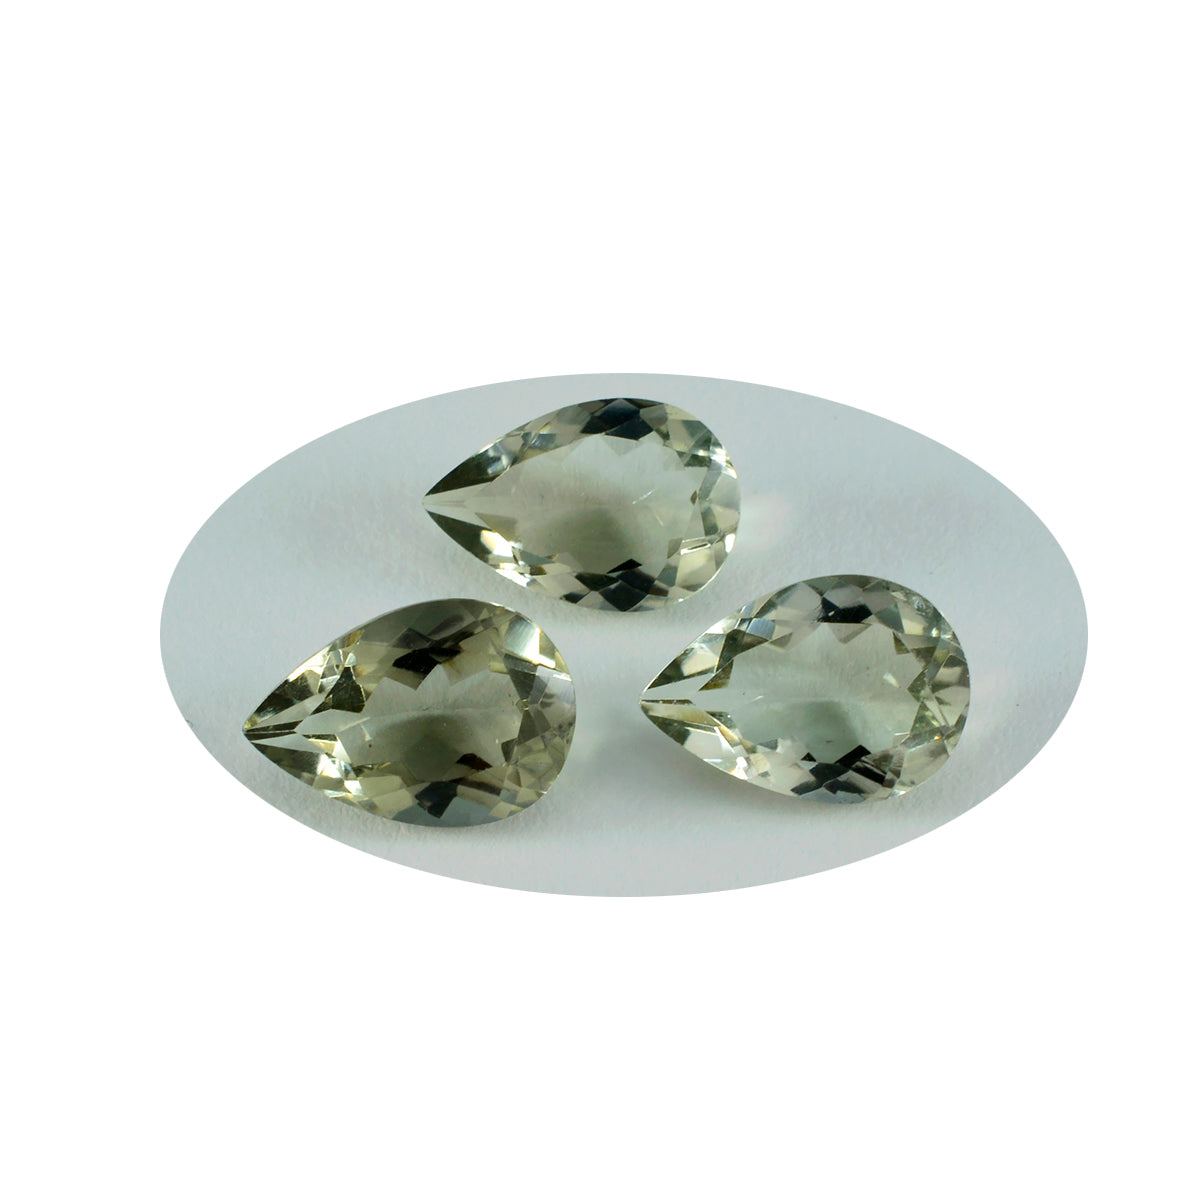 Riyogems 1pc améthyste verte à facettes 7x10mm forme de poire bonne qualité pierre précieuse en vrac